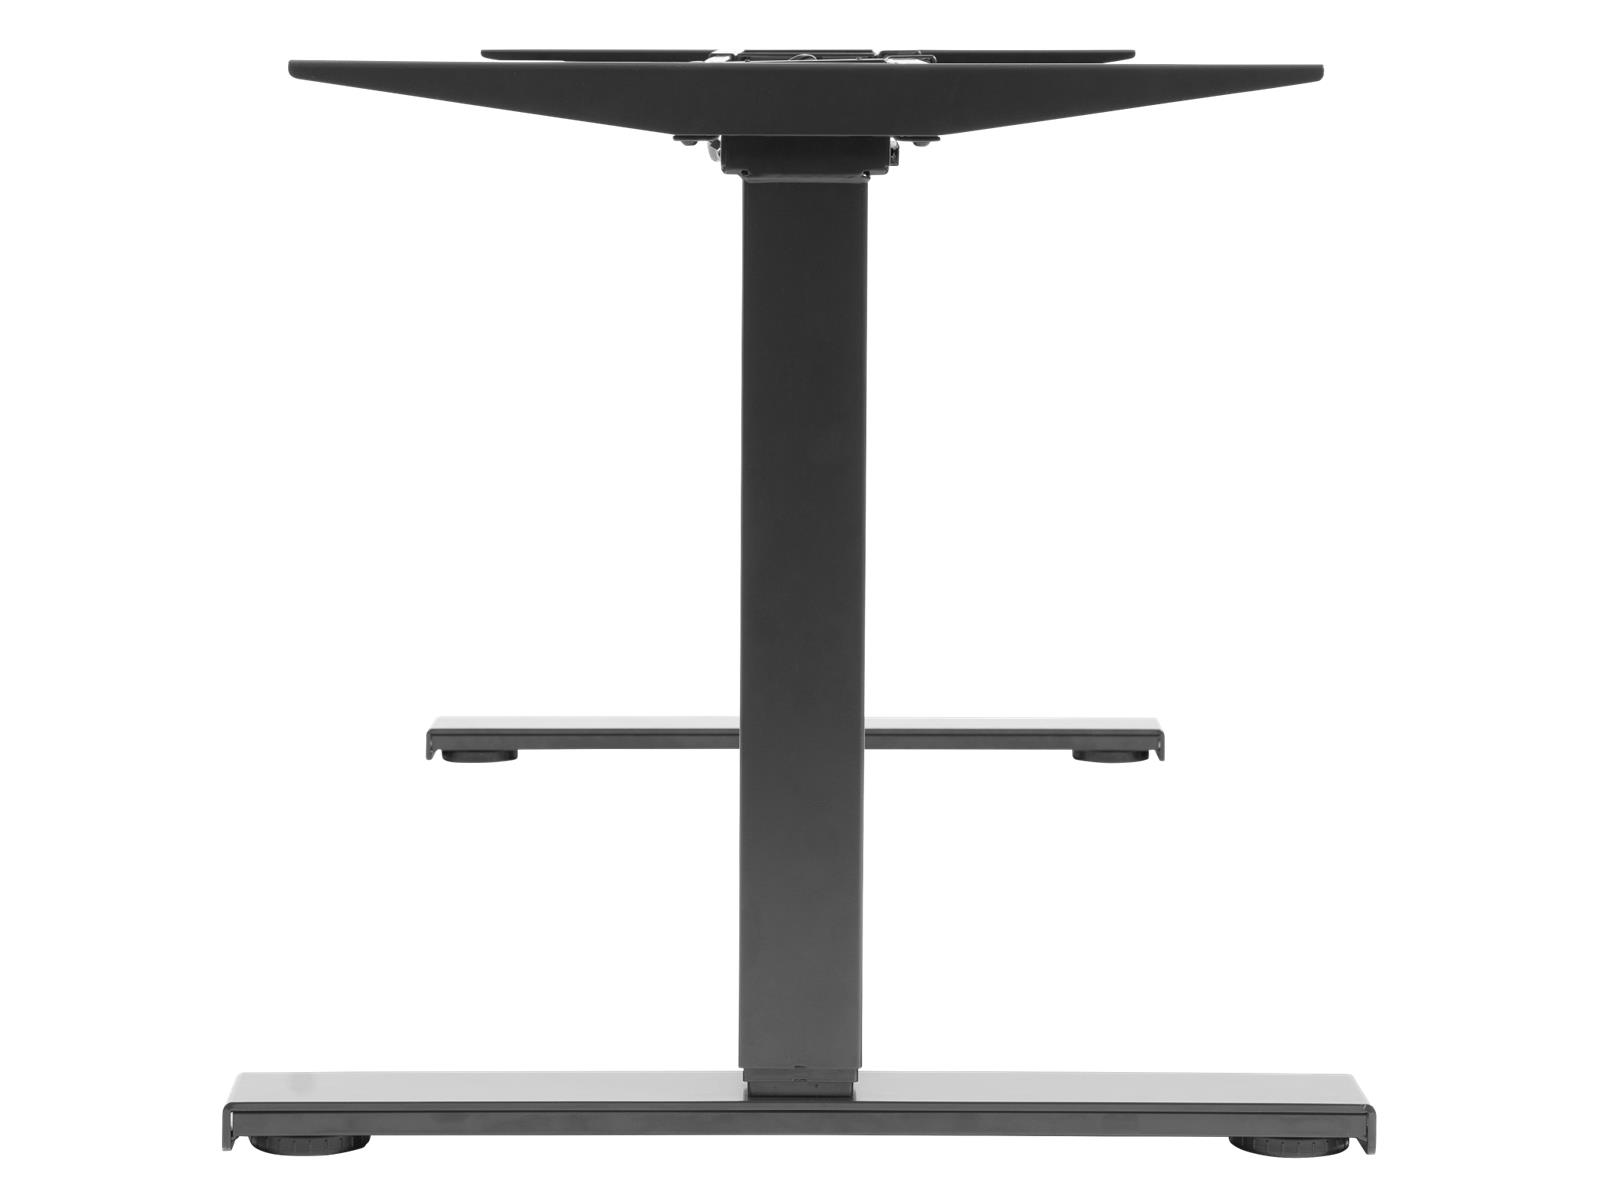 Tischgestell imstande ''business-b'' max. 125kg, Breite 100-170cm, Höhe 62-128cm